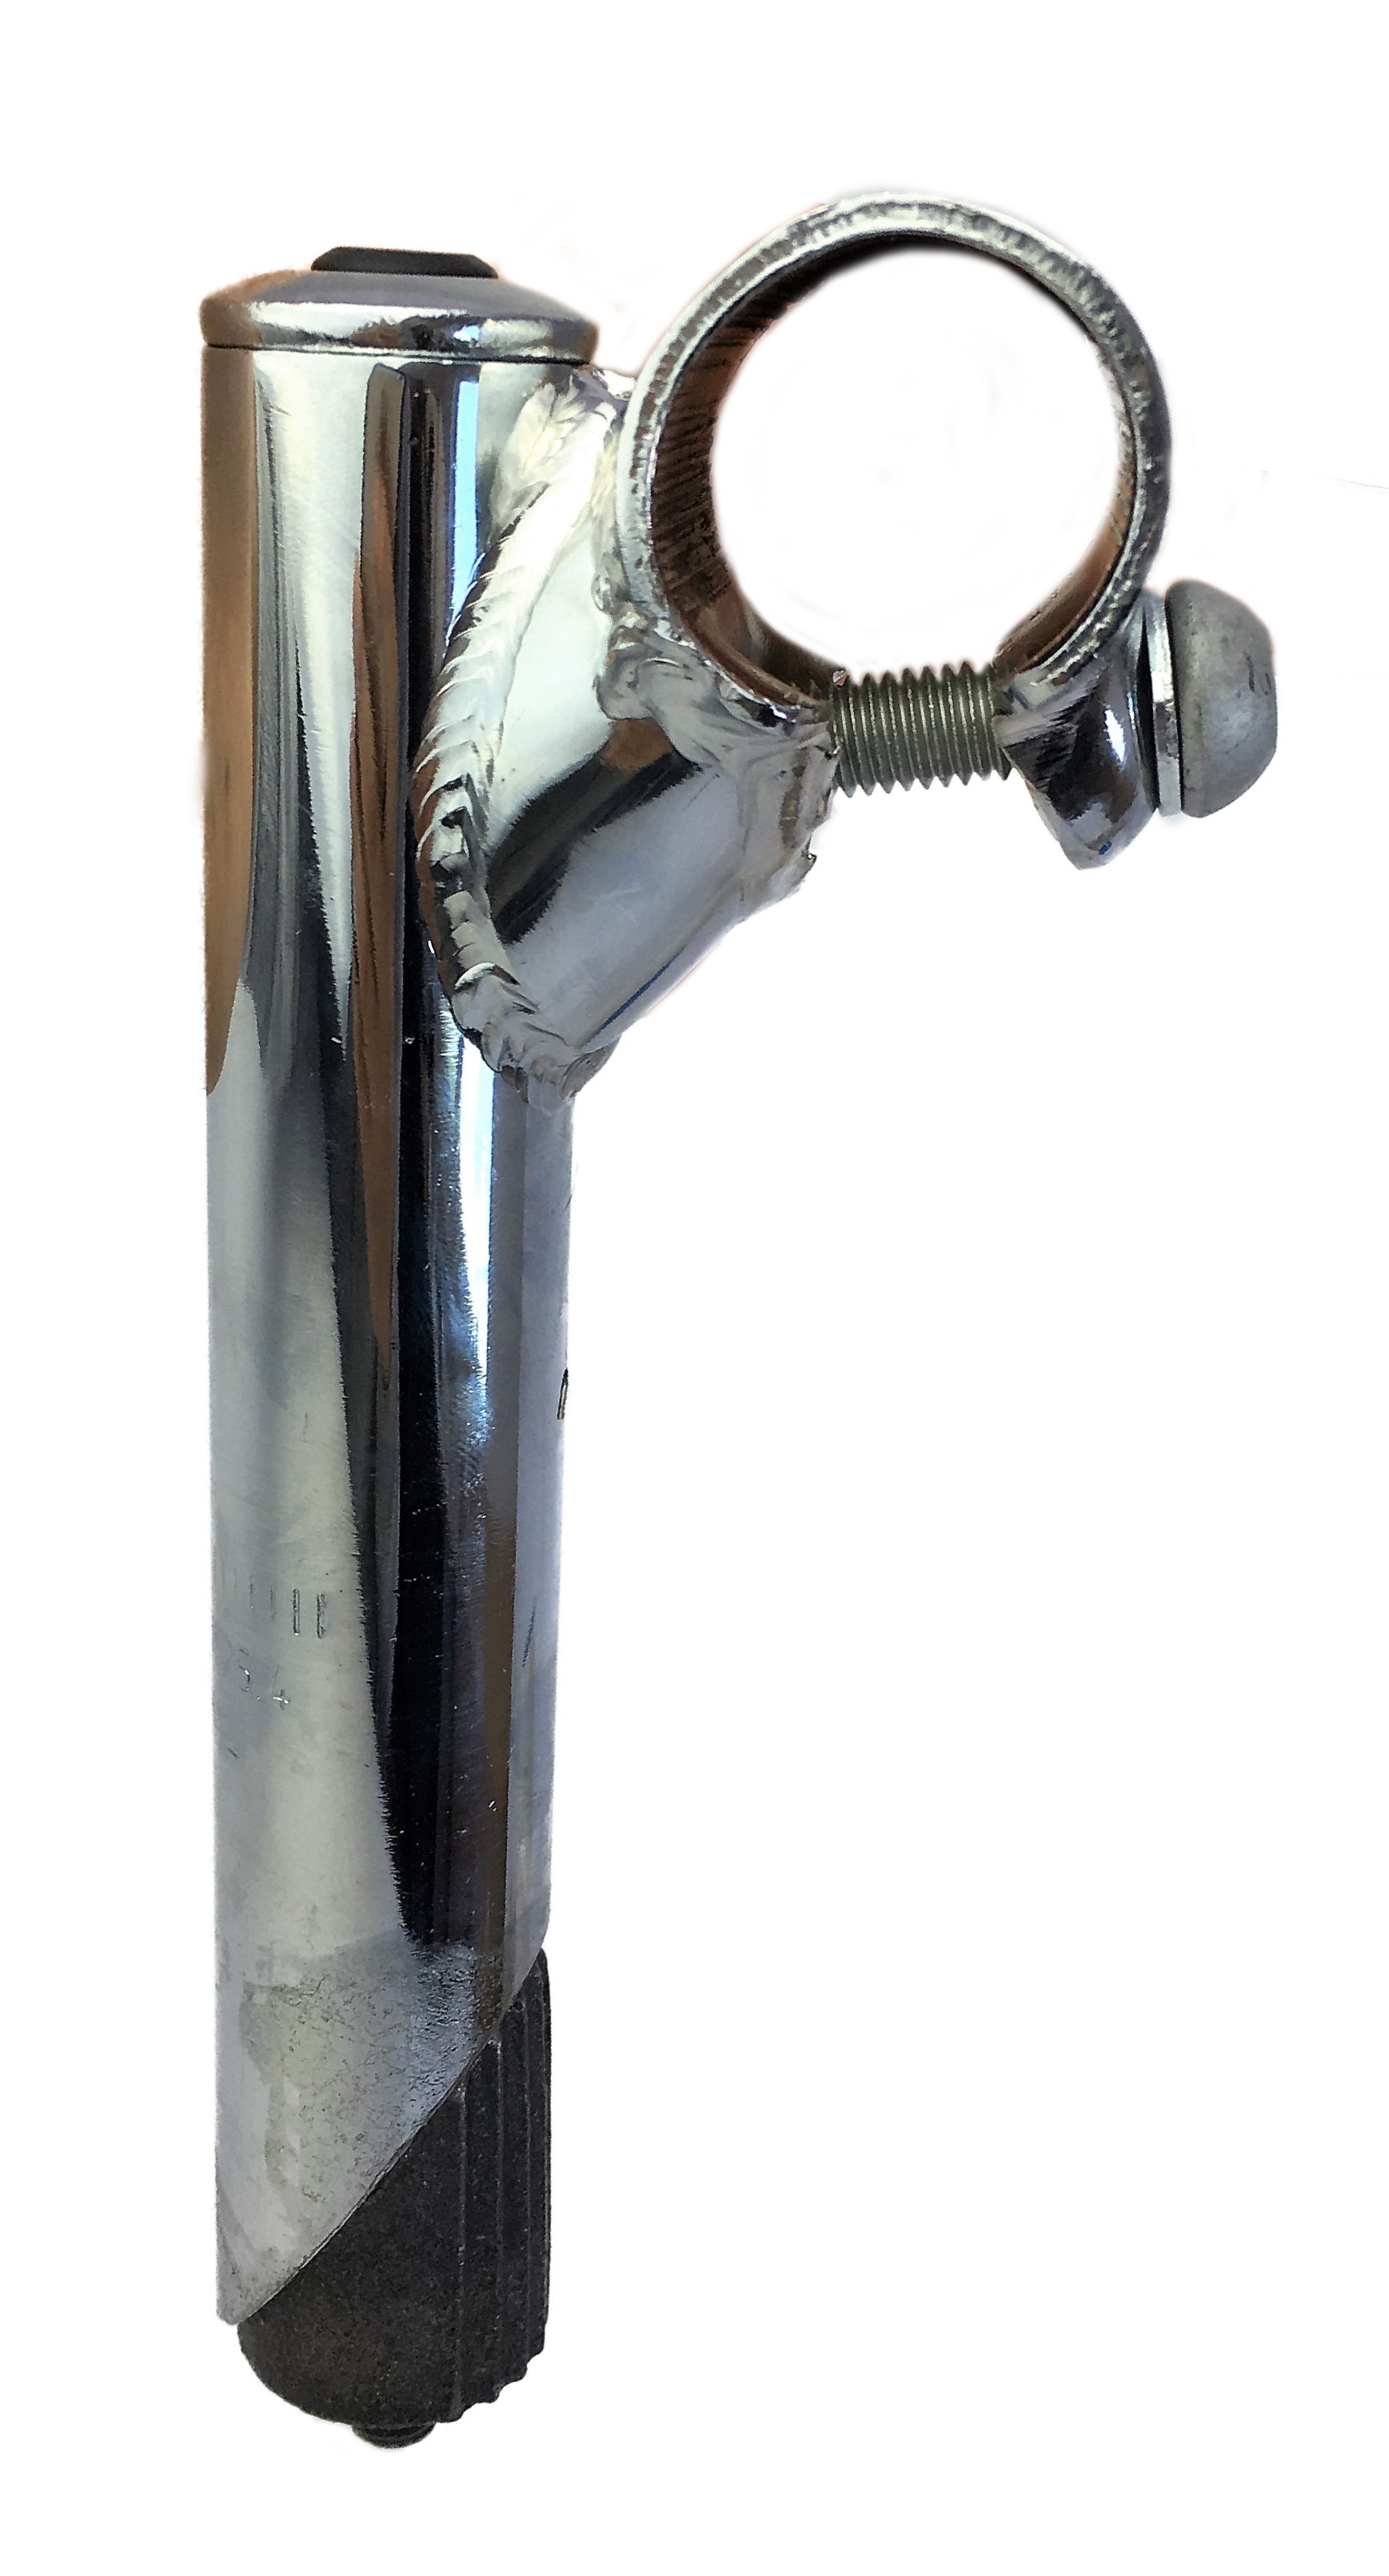 Tija del manillar 25,4 - 25,4, eje de acero con sujeción mediante 1 tornillo cromada Humpert Ergotec CV 101